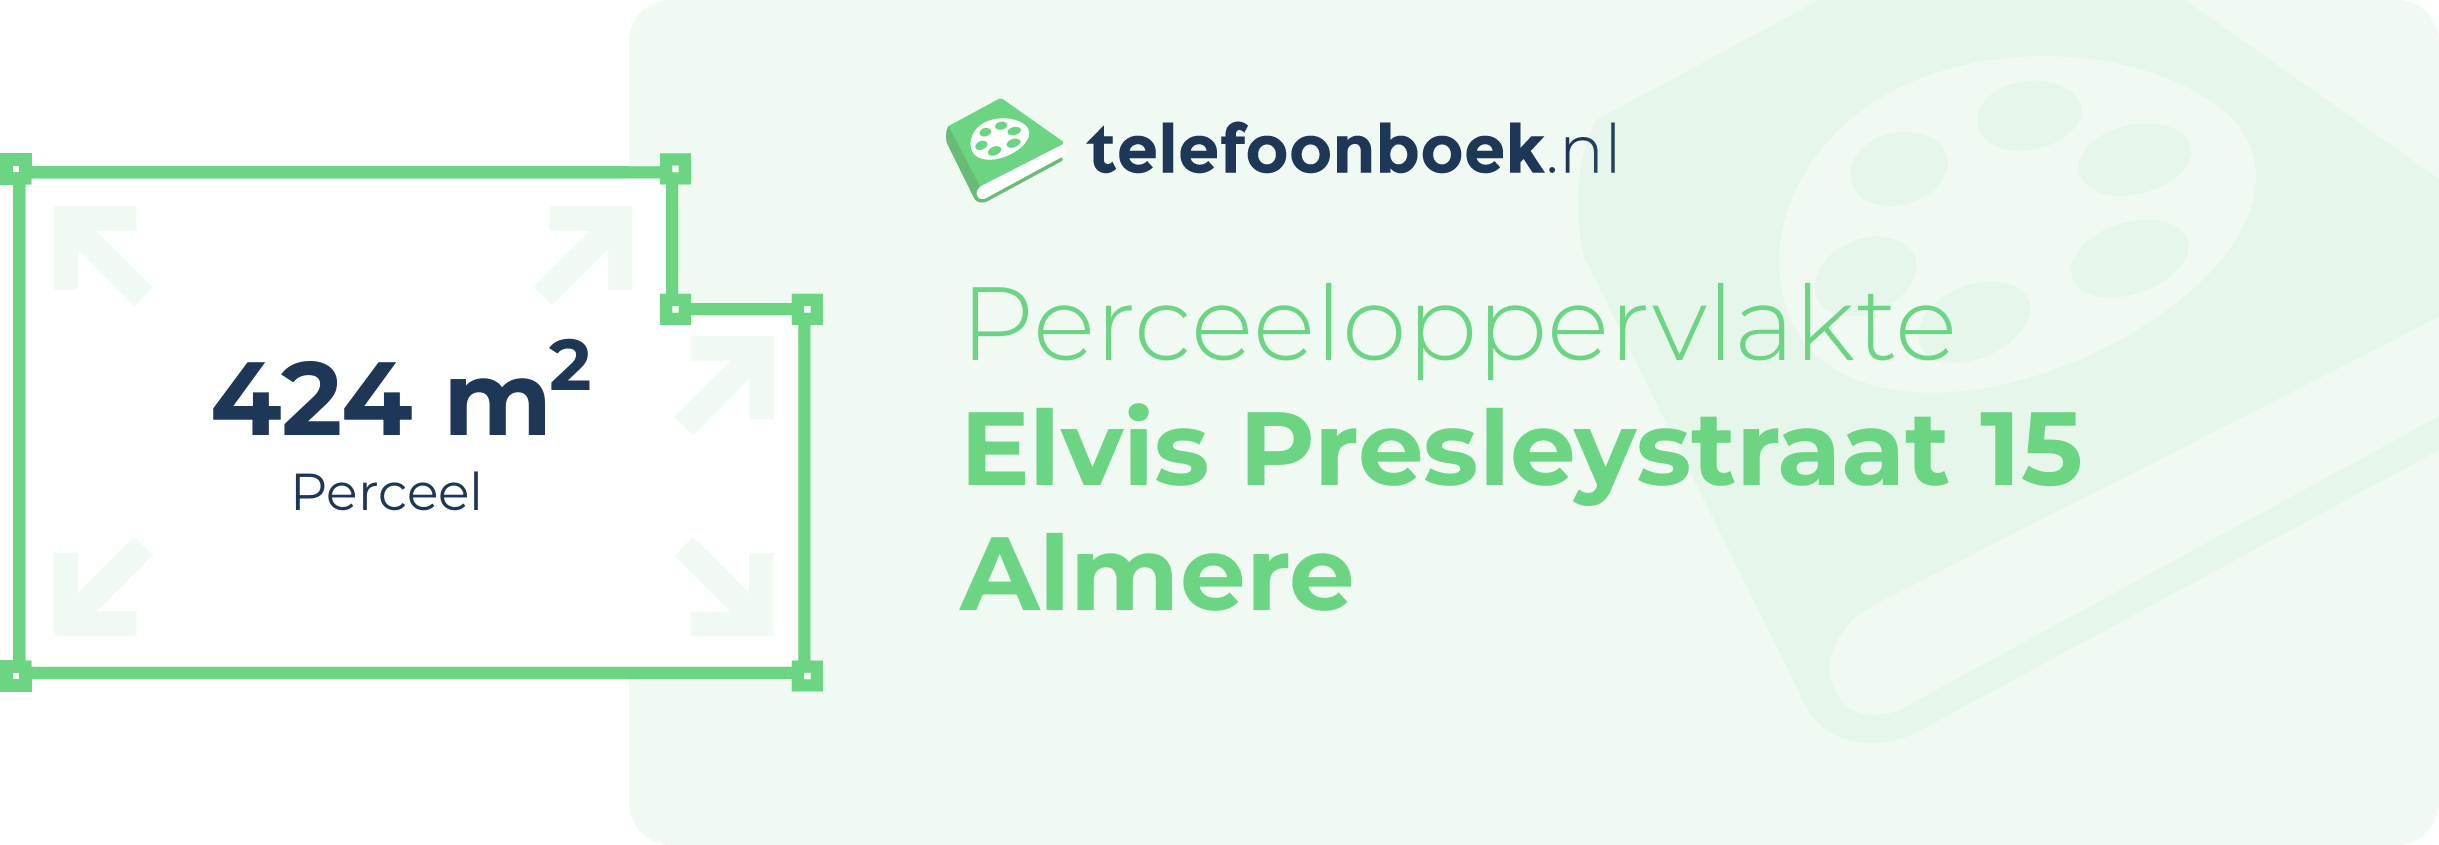 Perceeloppervlakte Elvis Presleystraat 15 Almere